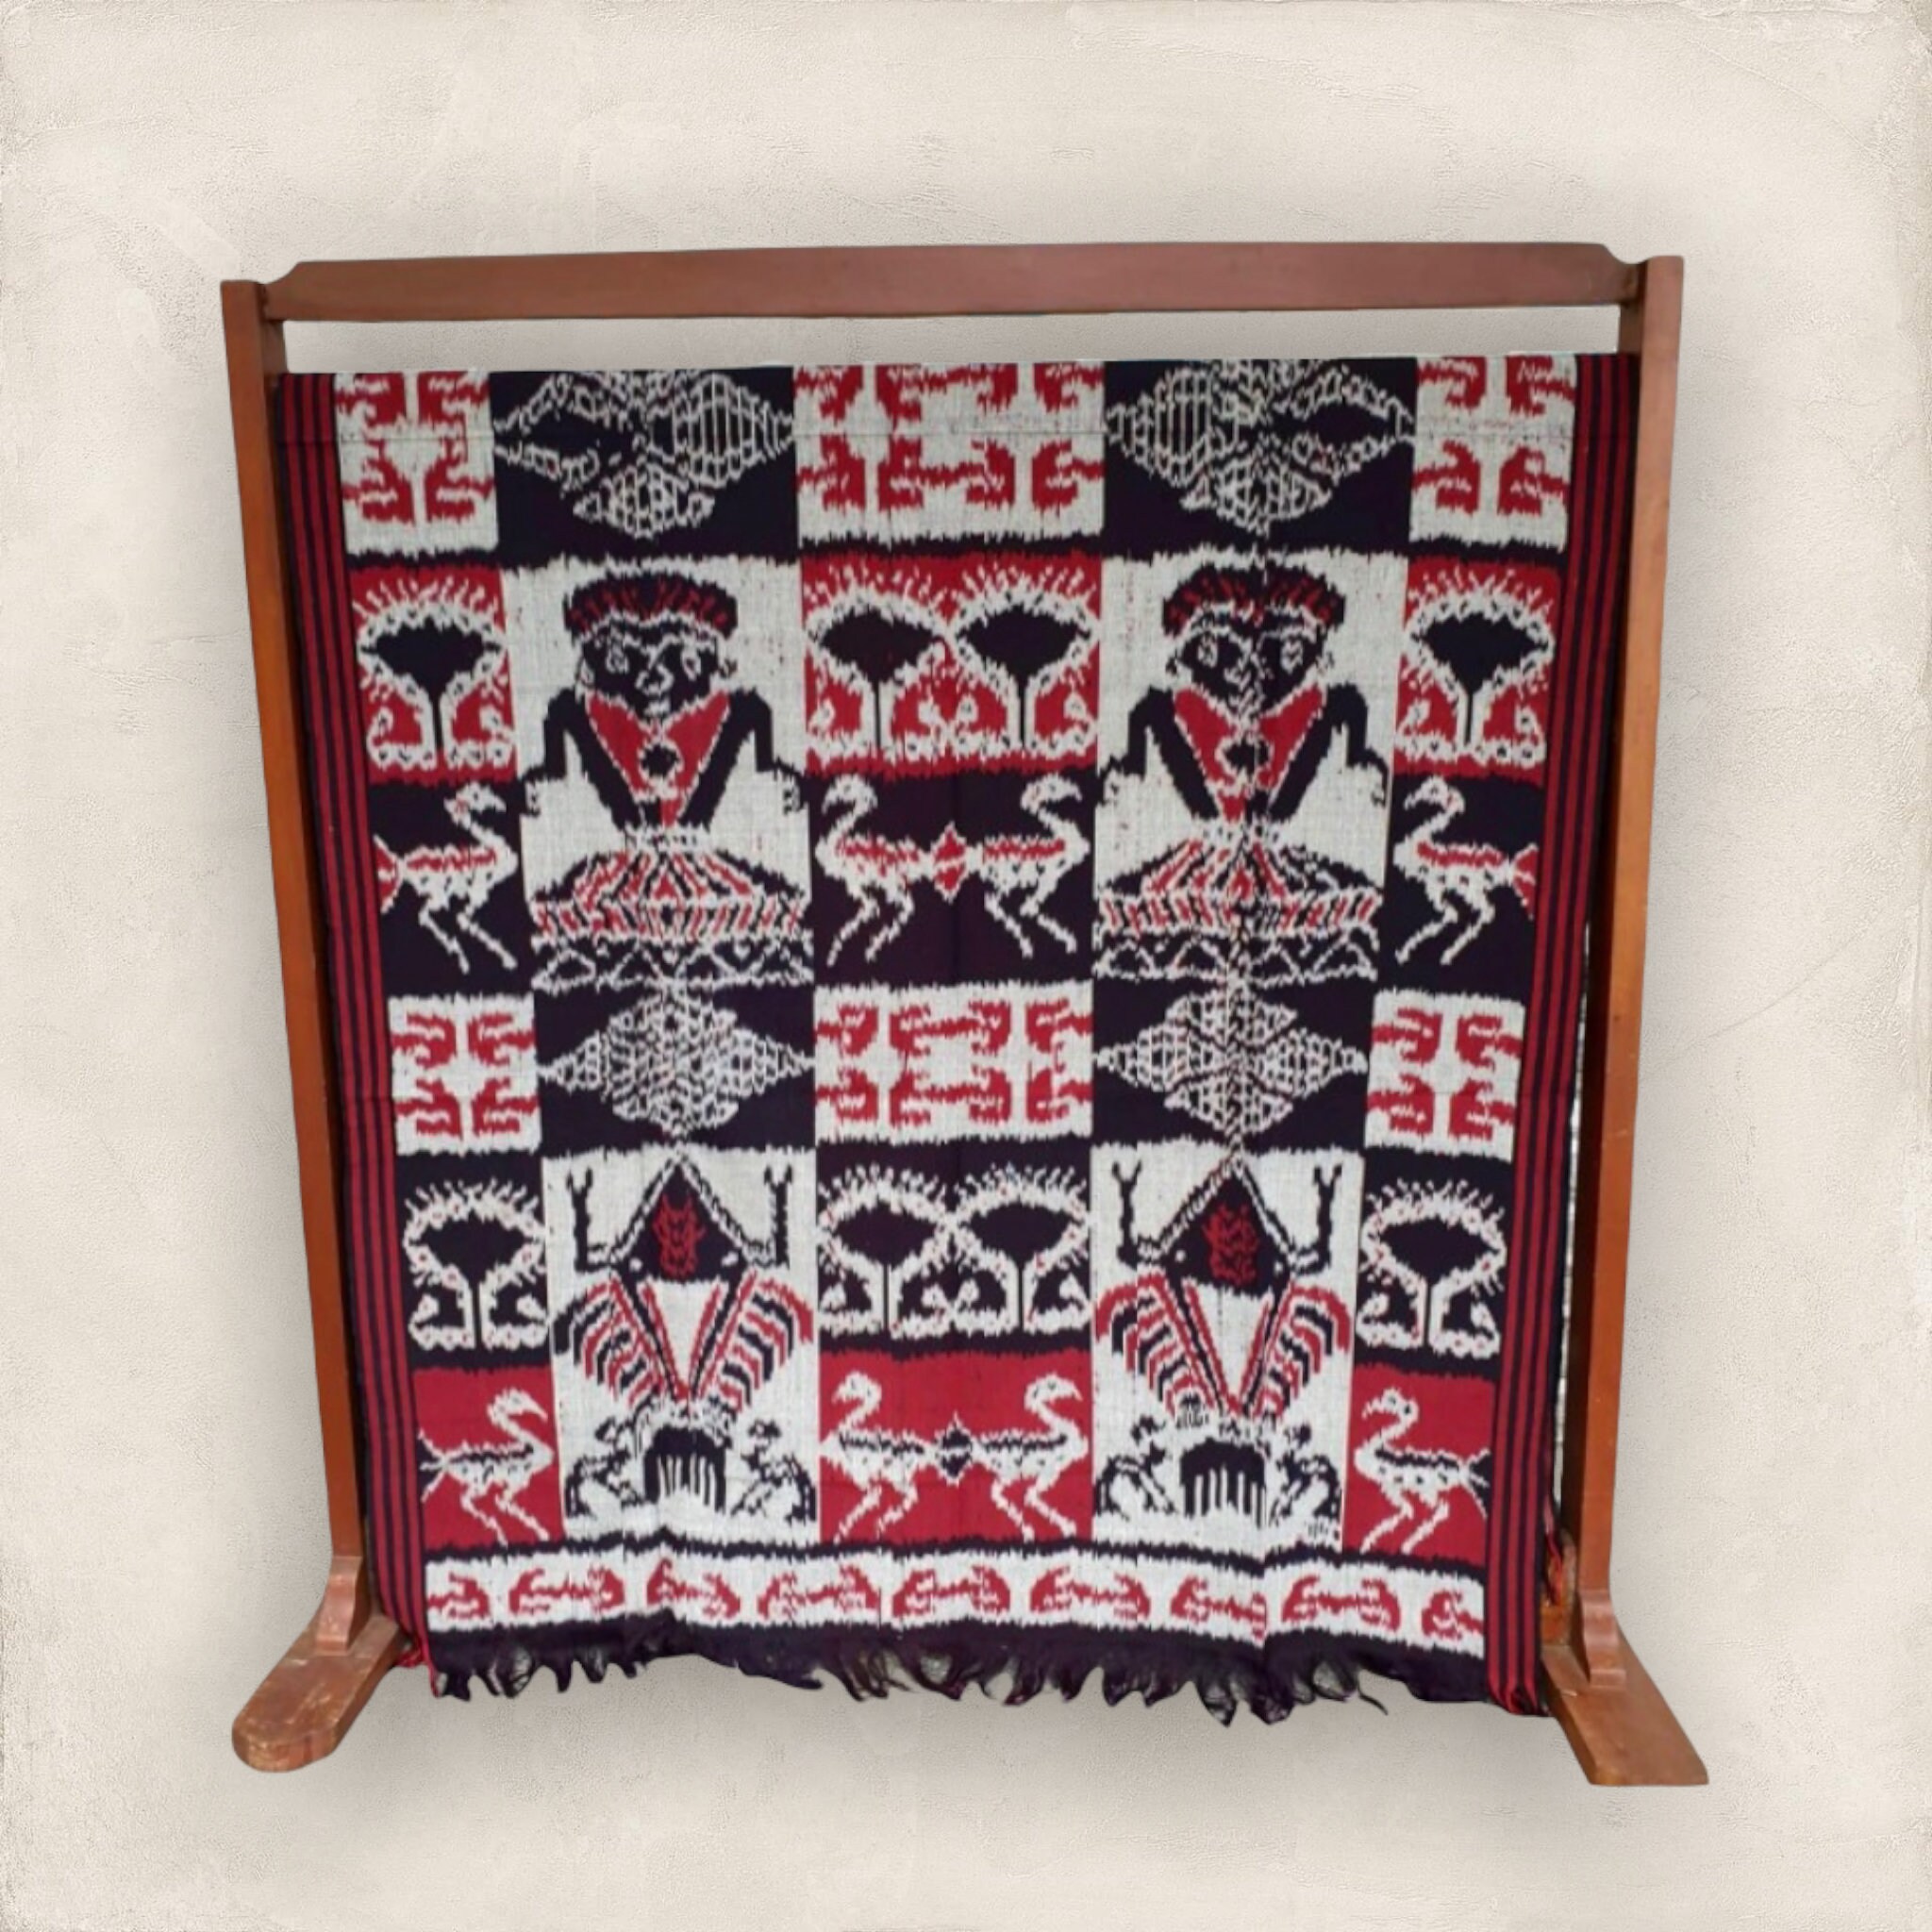 Tenun Ikat Sumba Indonesian Woven Fabric | Etsy